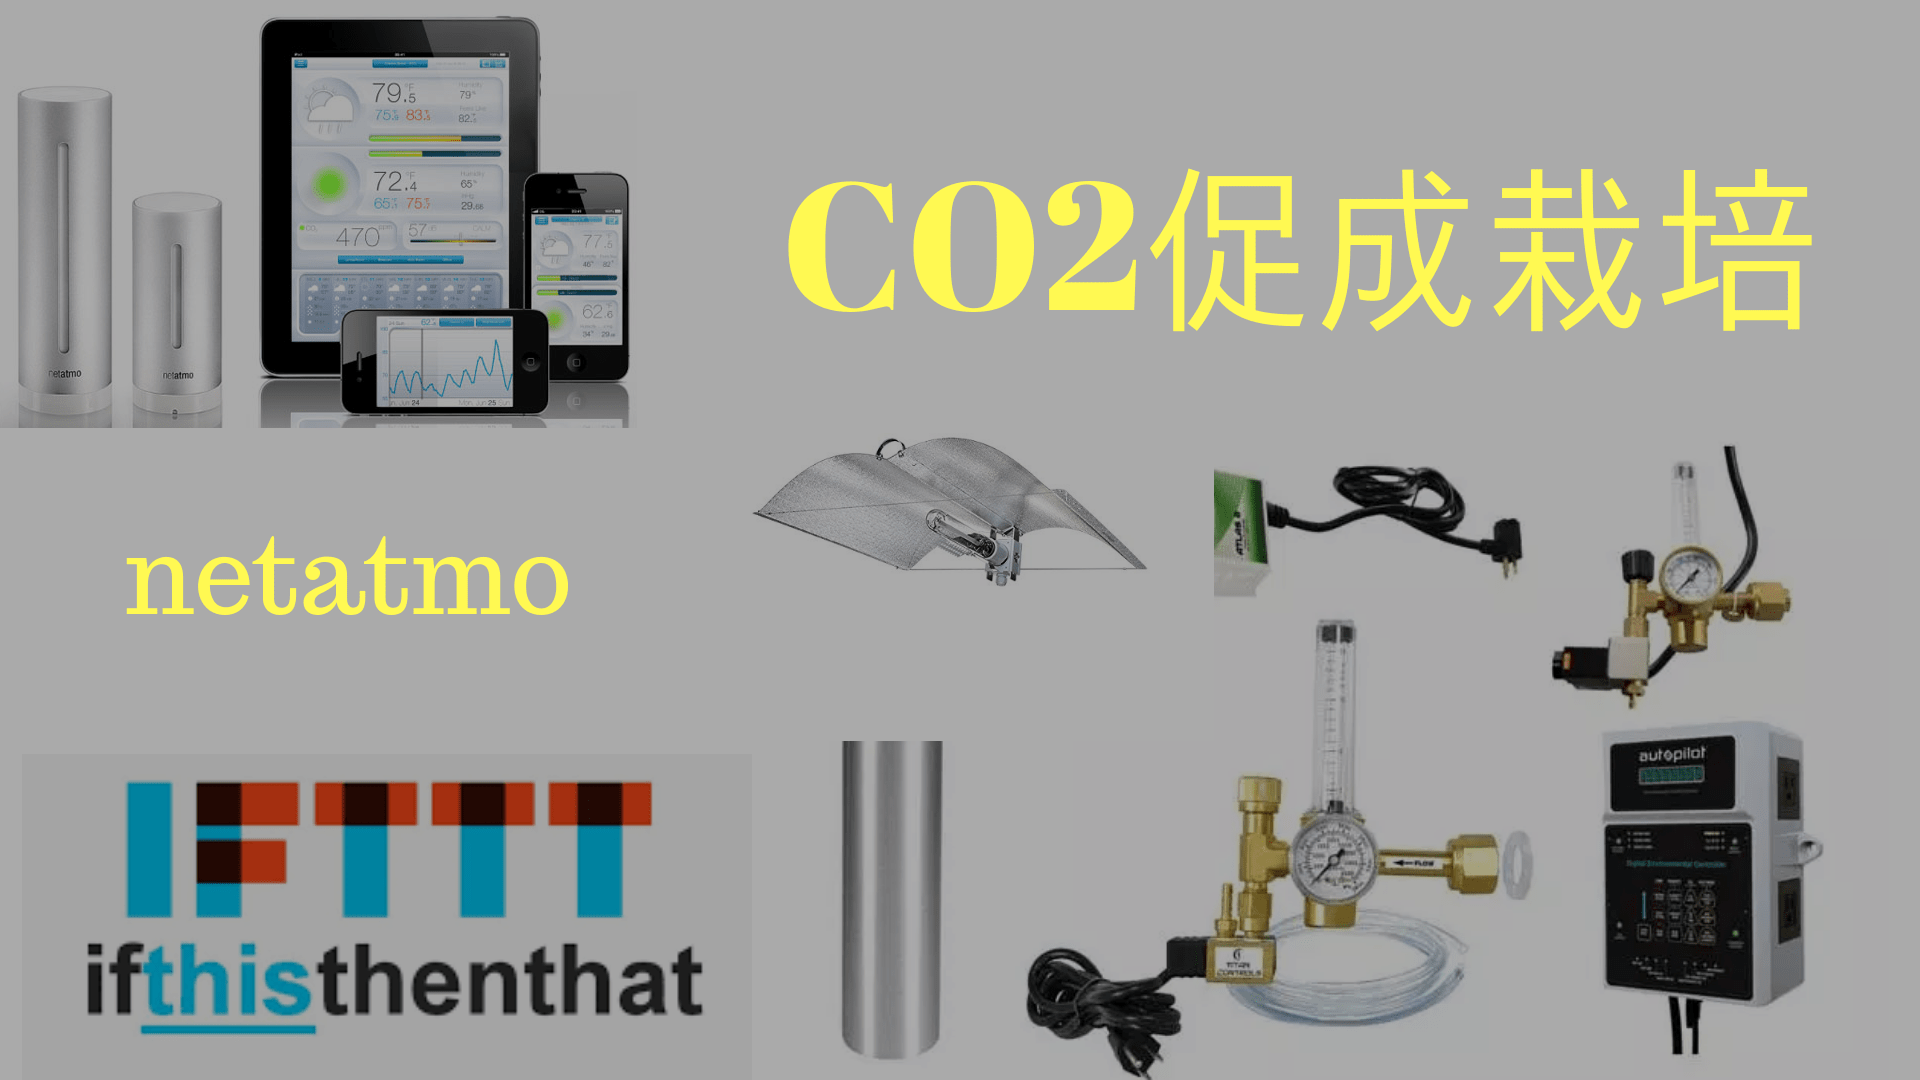 大麻に二酸化炭素をあげる方法。CO2促成栽培。そしてnetatmo